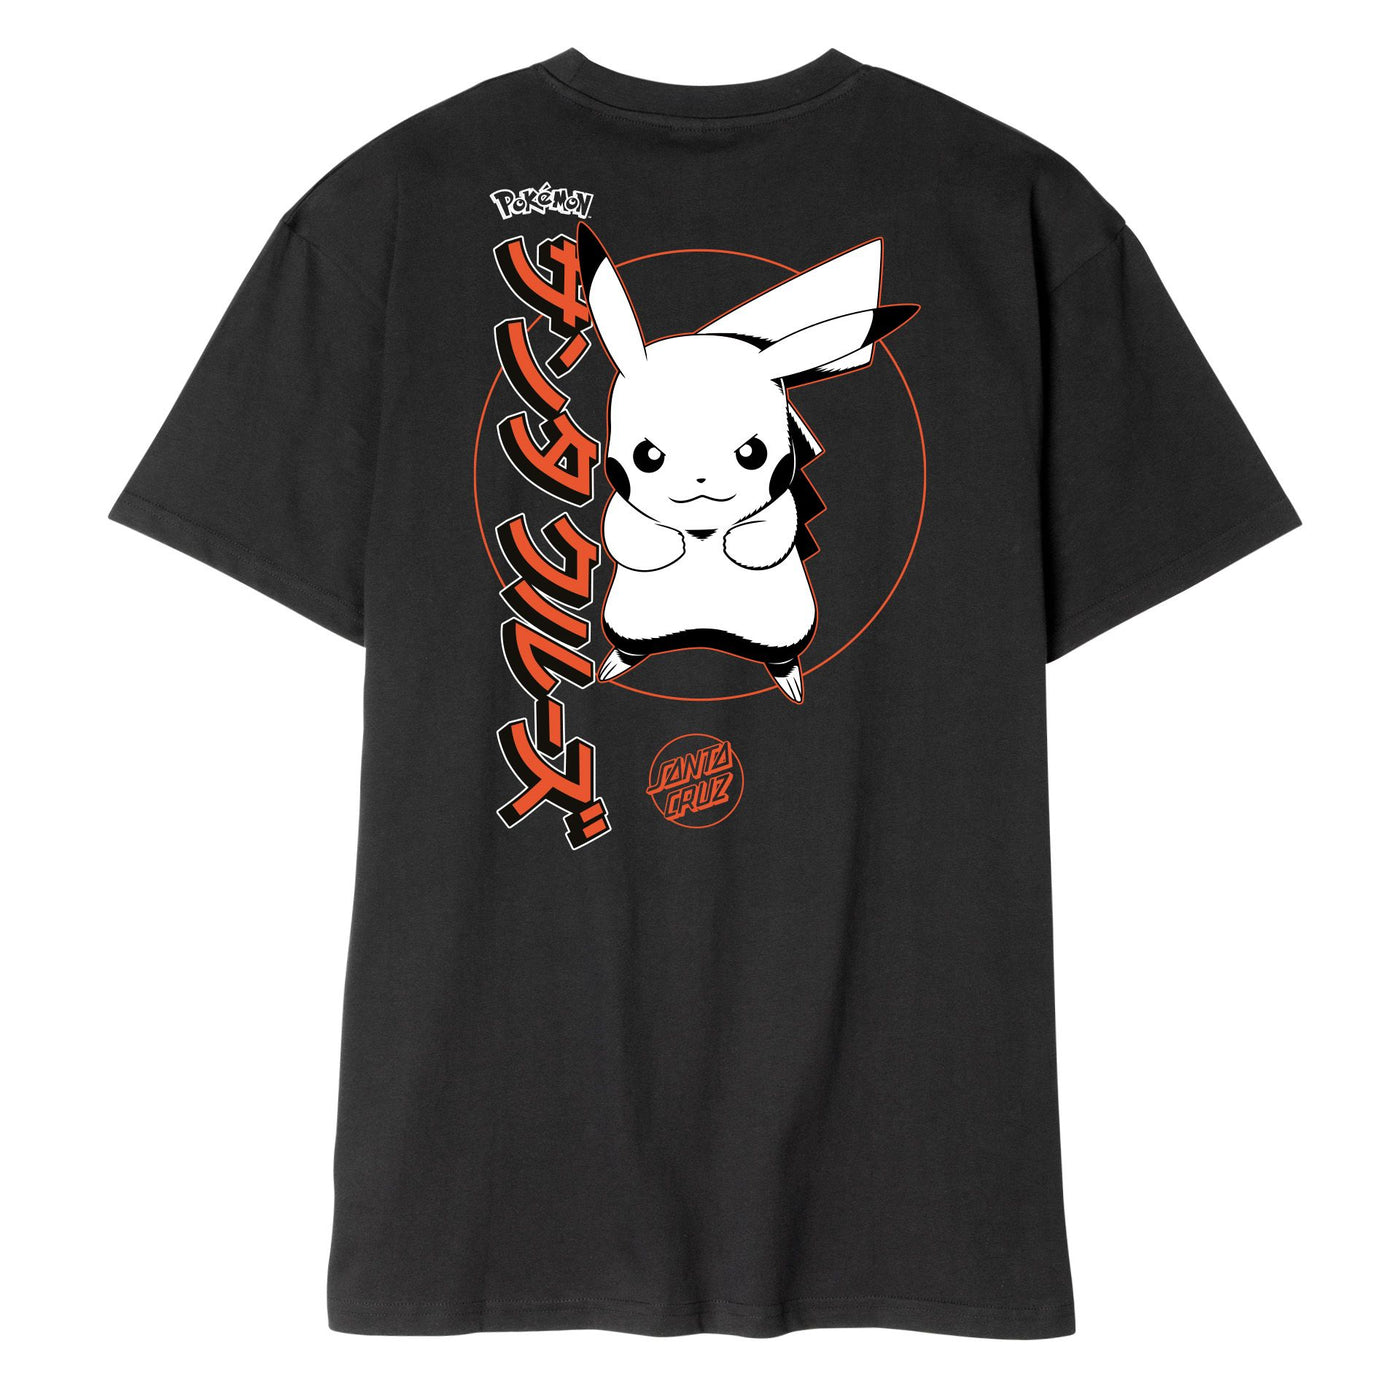 Santa Cruz X Pokémon Pikachu T-Shirt - Black